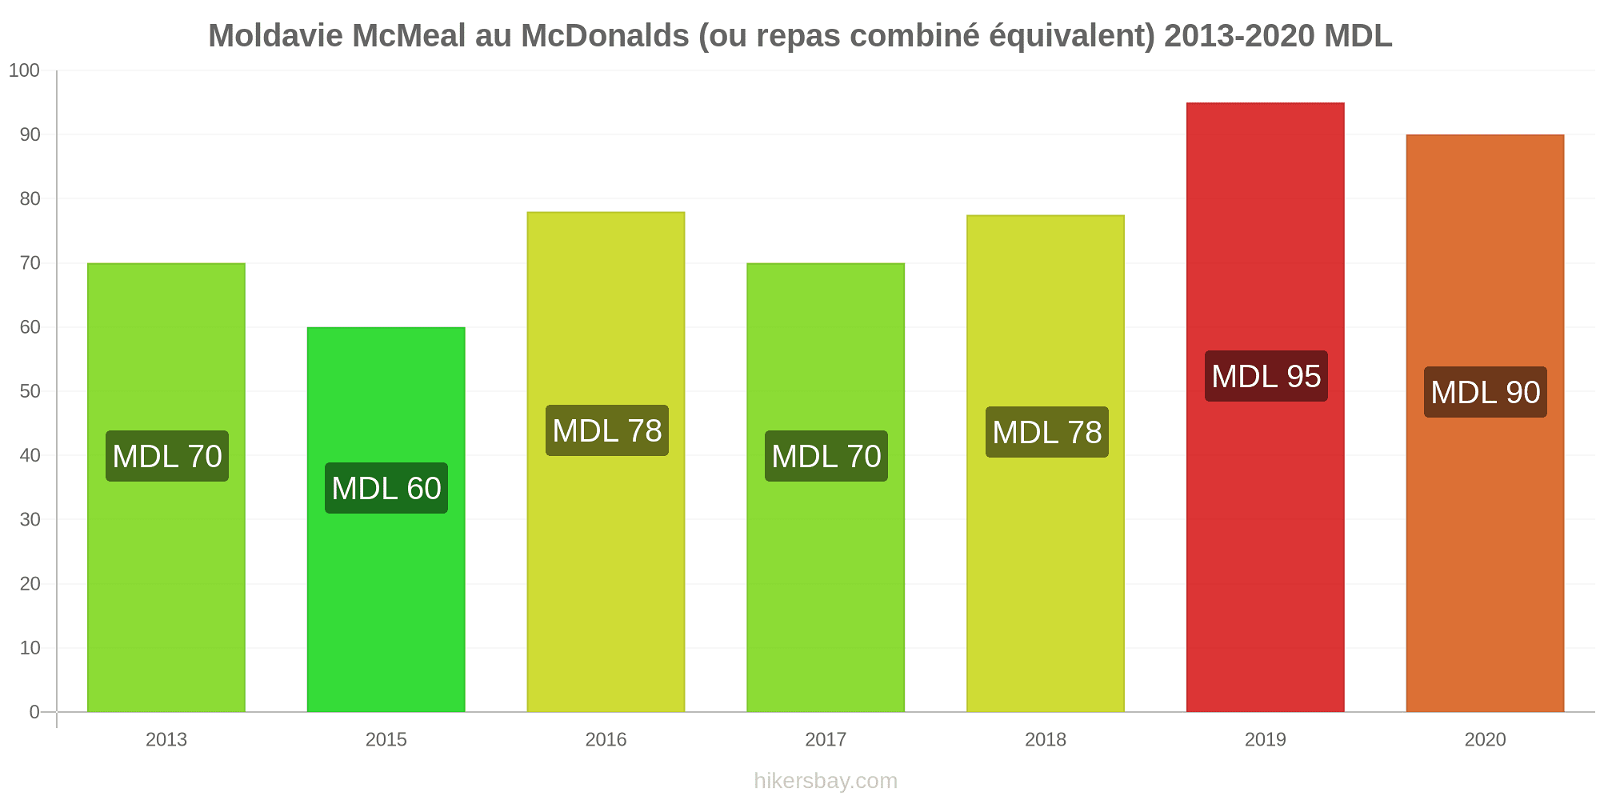 Moldavie changements de prix McMeal à McDonald ' s (ou Combo équivalent tourteau) hikersbay.com